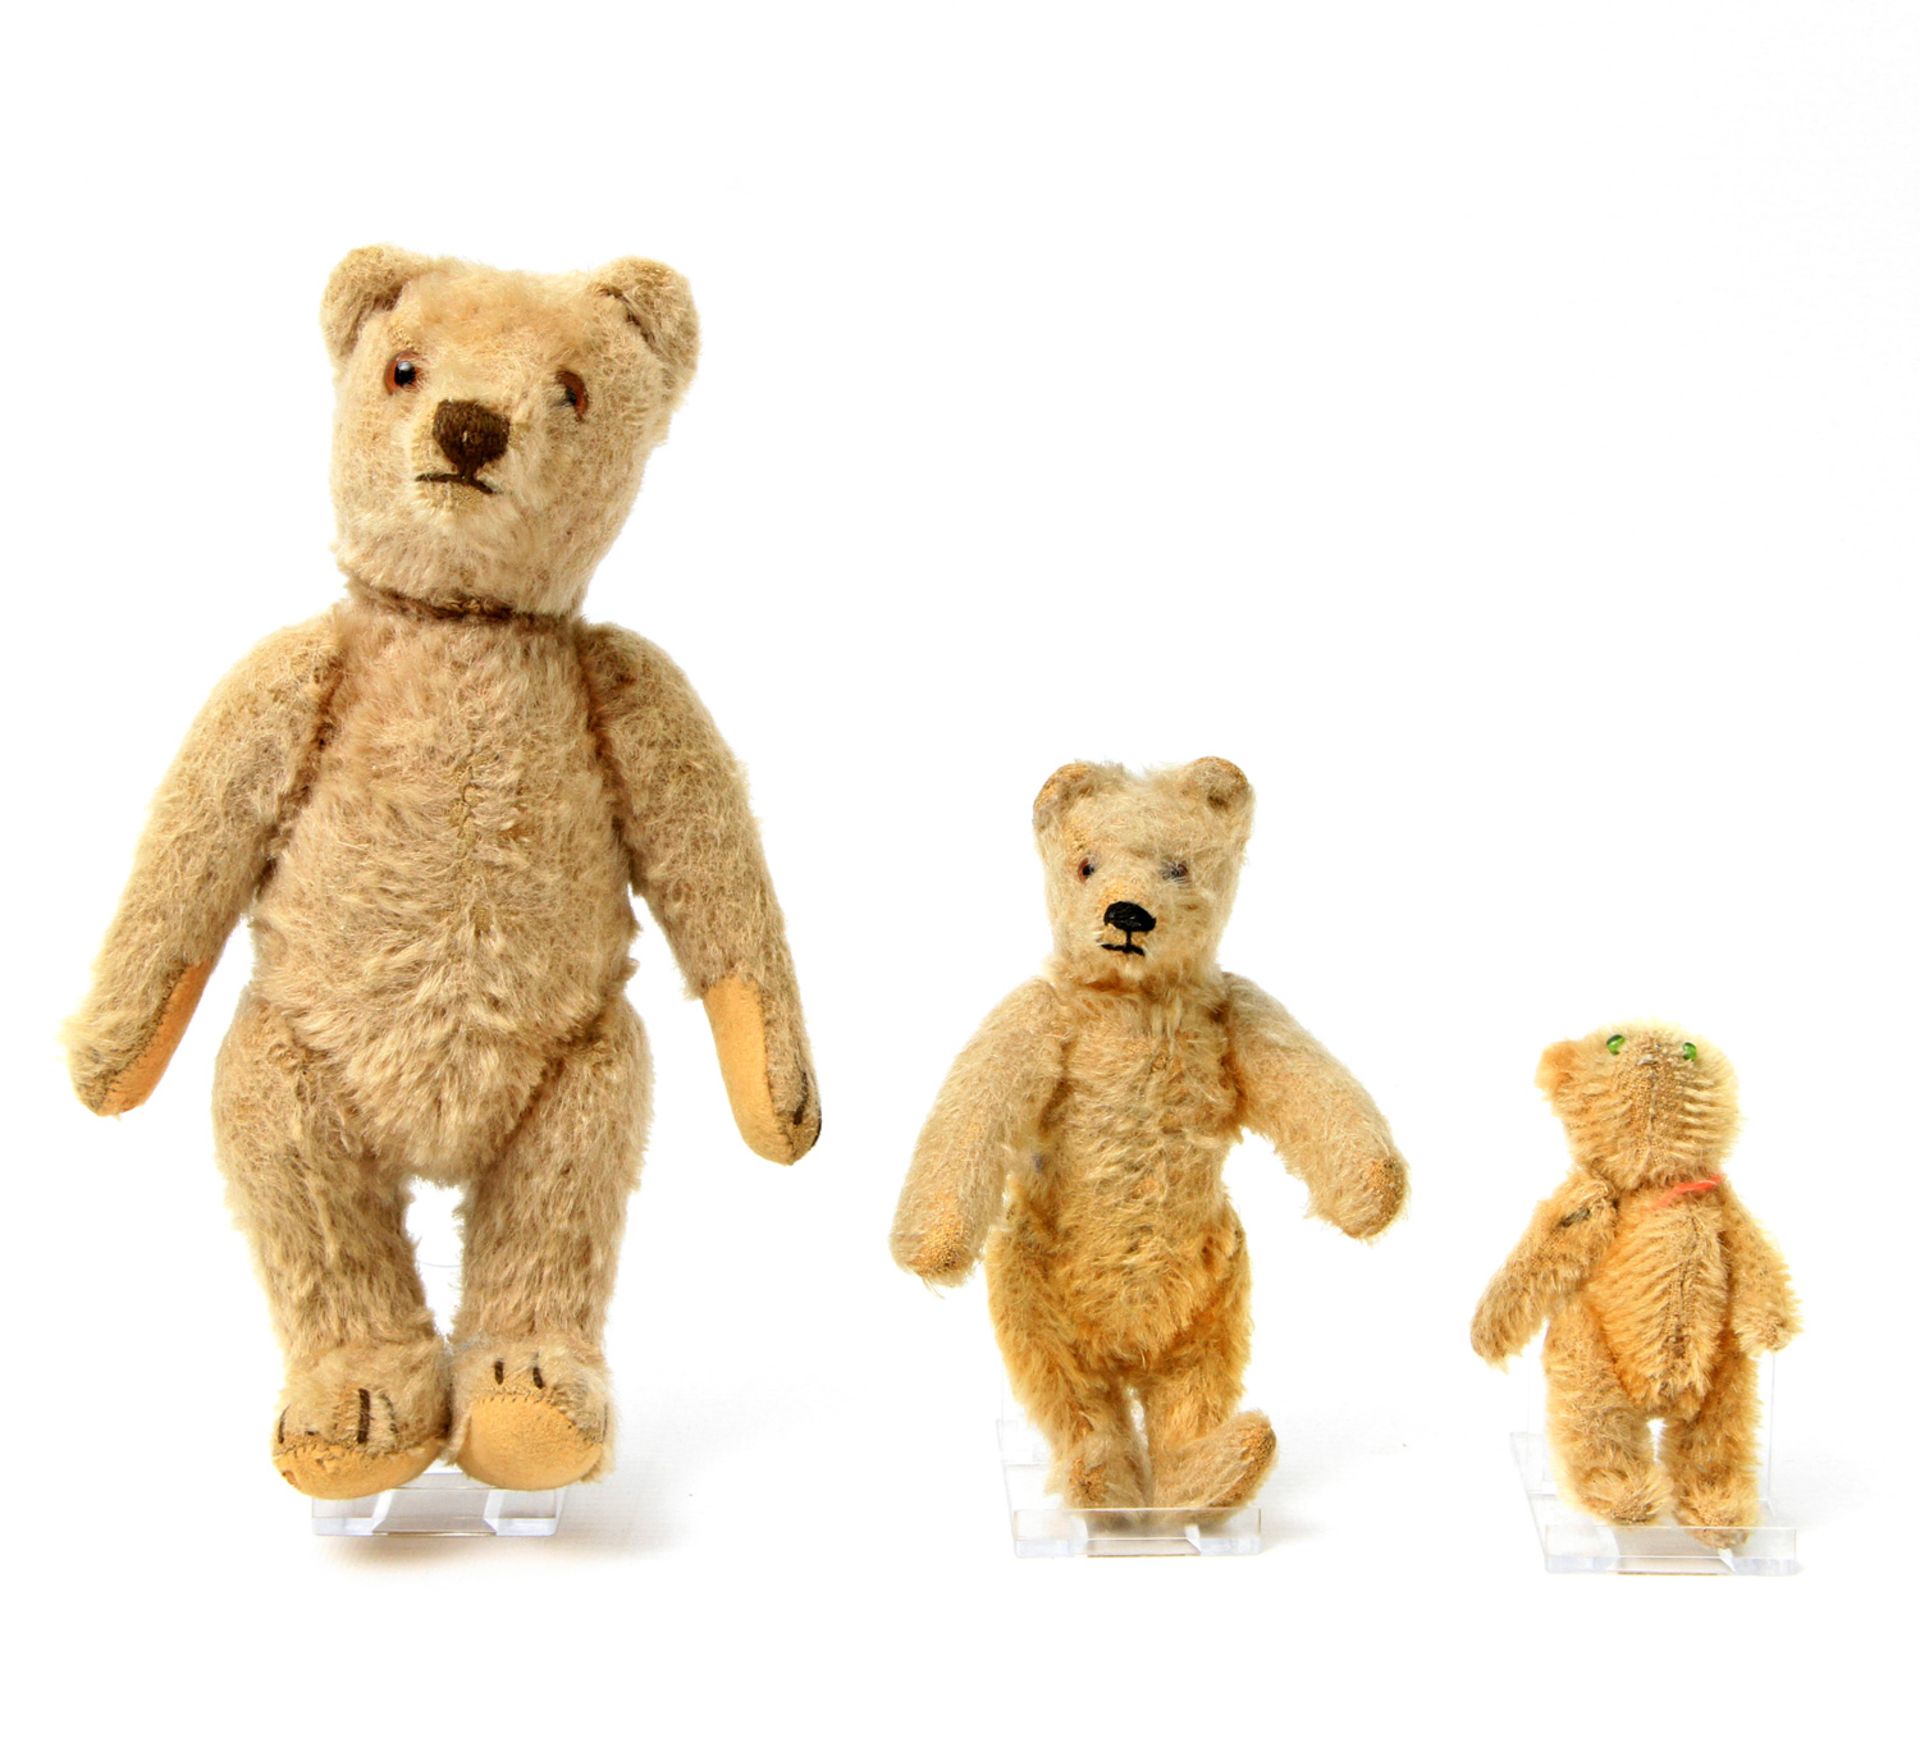 Drei Teddybären, Mohair, blondes Fell, bespielt. Großer Teddy: braune Glasaugen, braune Nasen- und